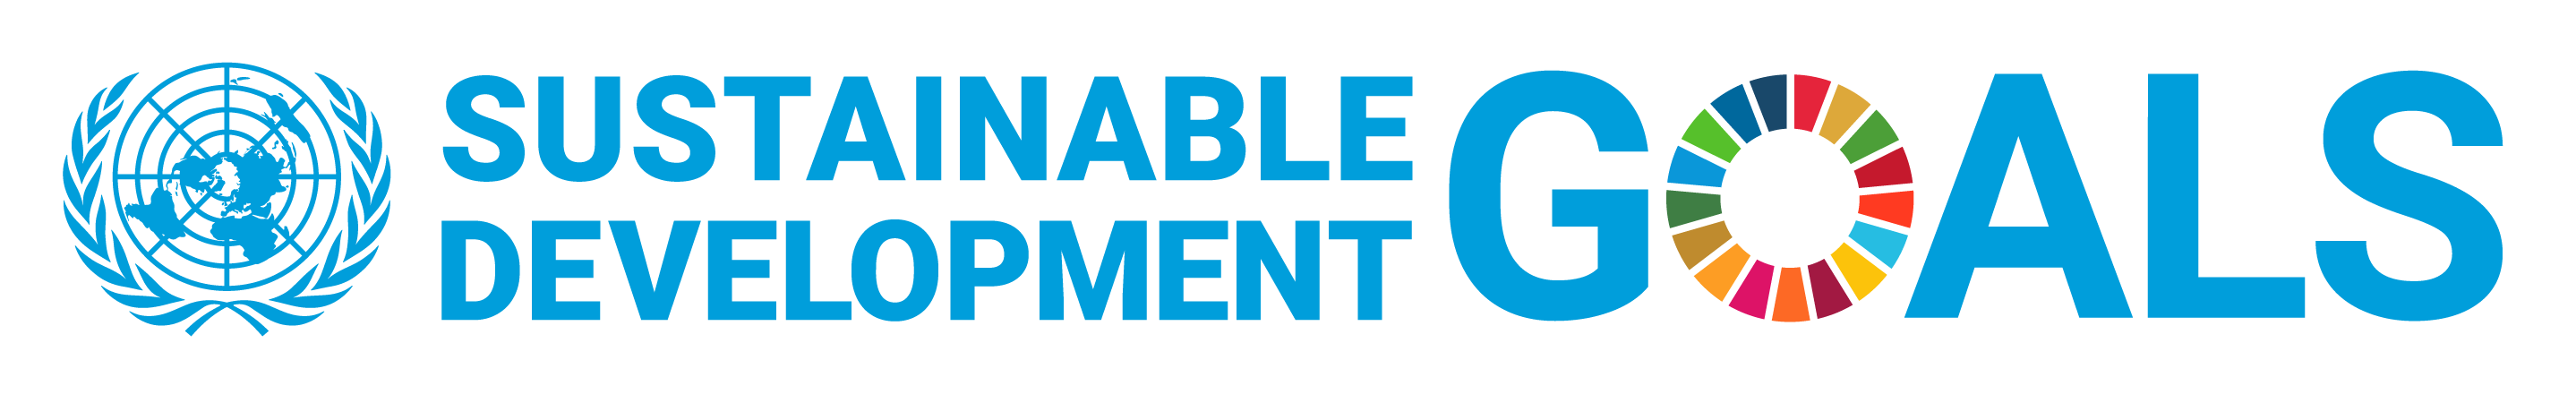 E_SDG_logo_UN_emblem